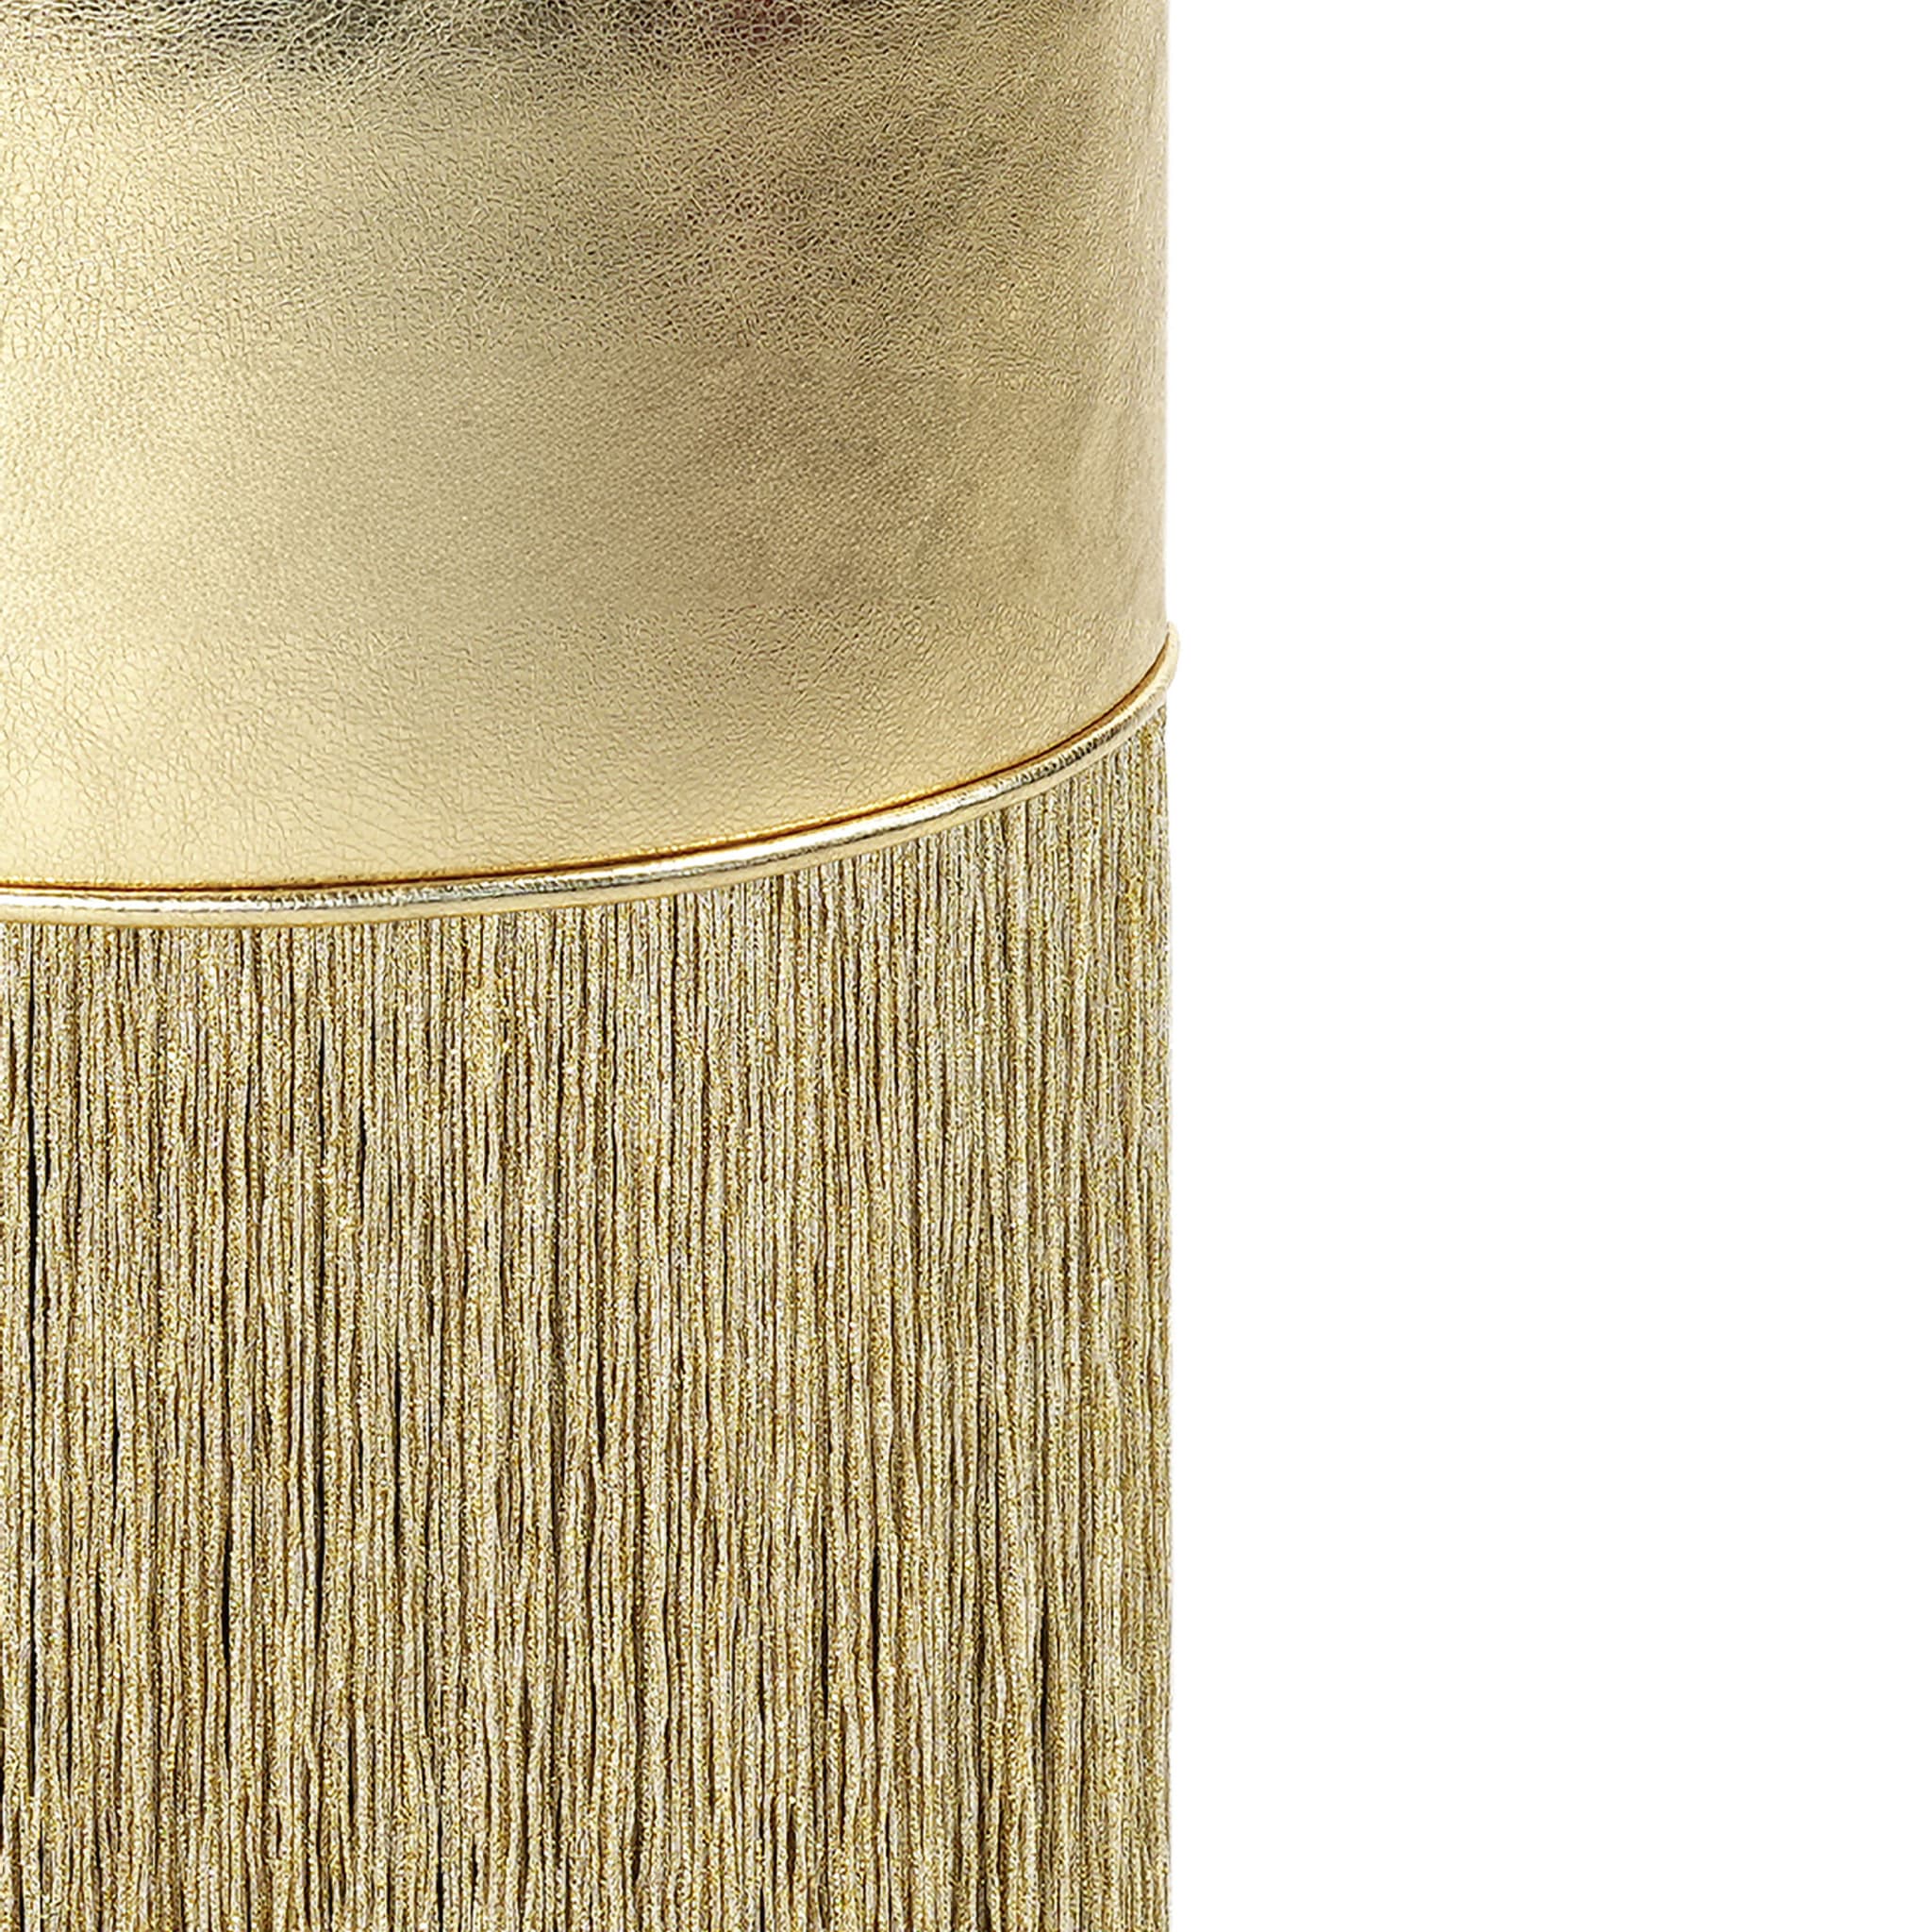 Pouf in pelle metallizzata color oro di Lorenza Bozzoli - Vista alternativa 1